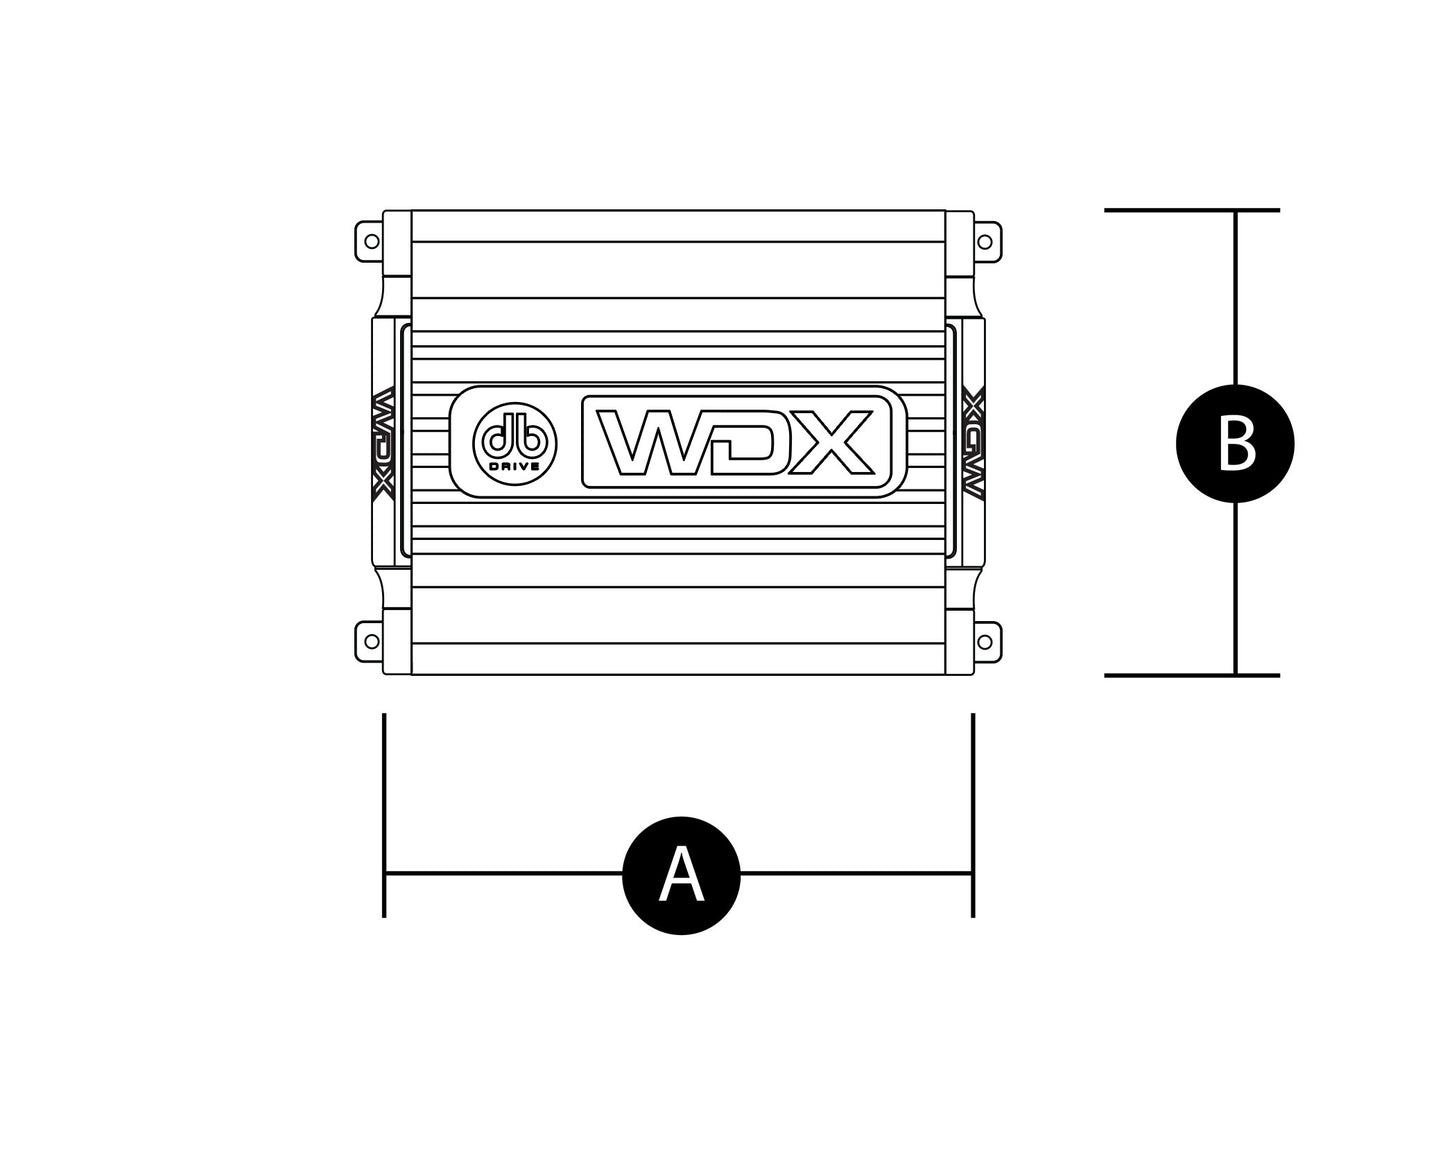 WDX300.4